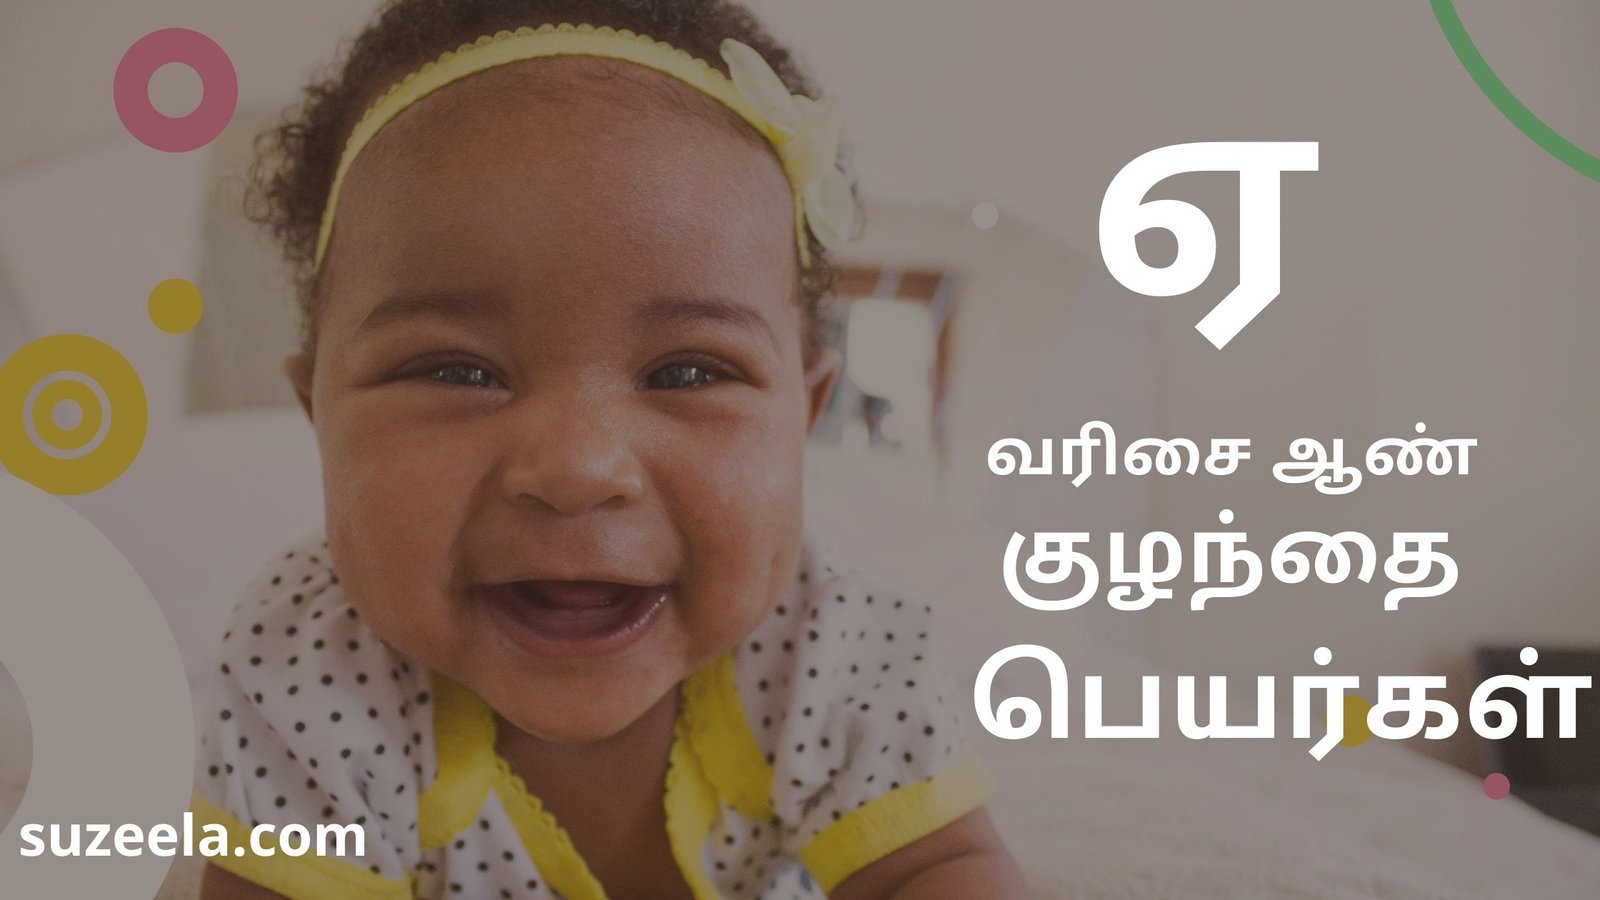 Ye boy baby names Tamil